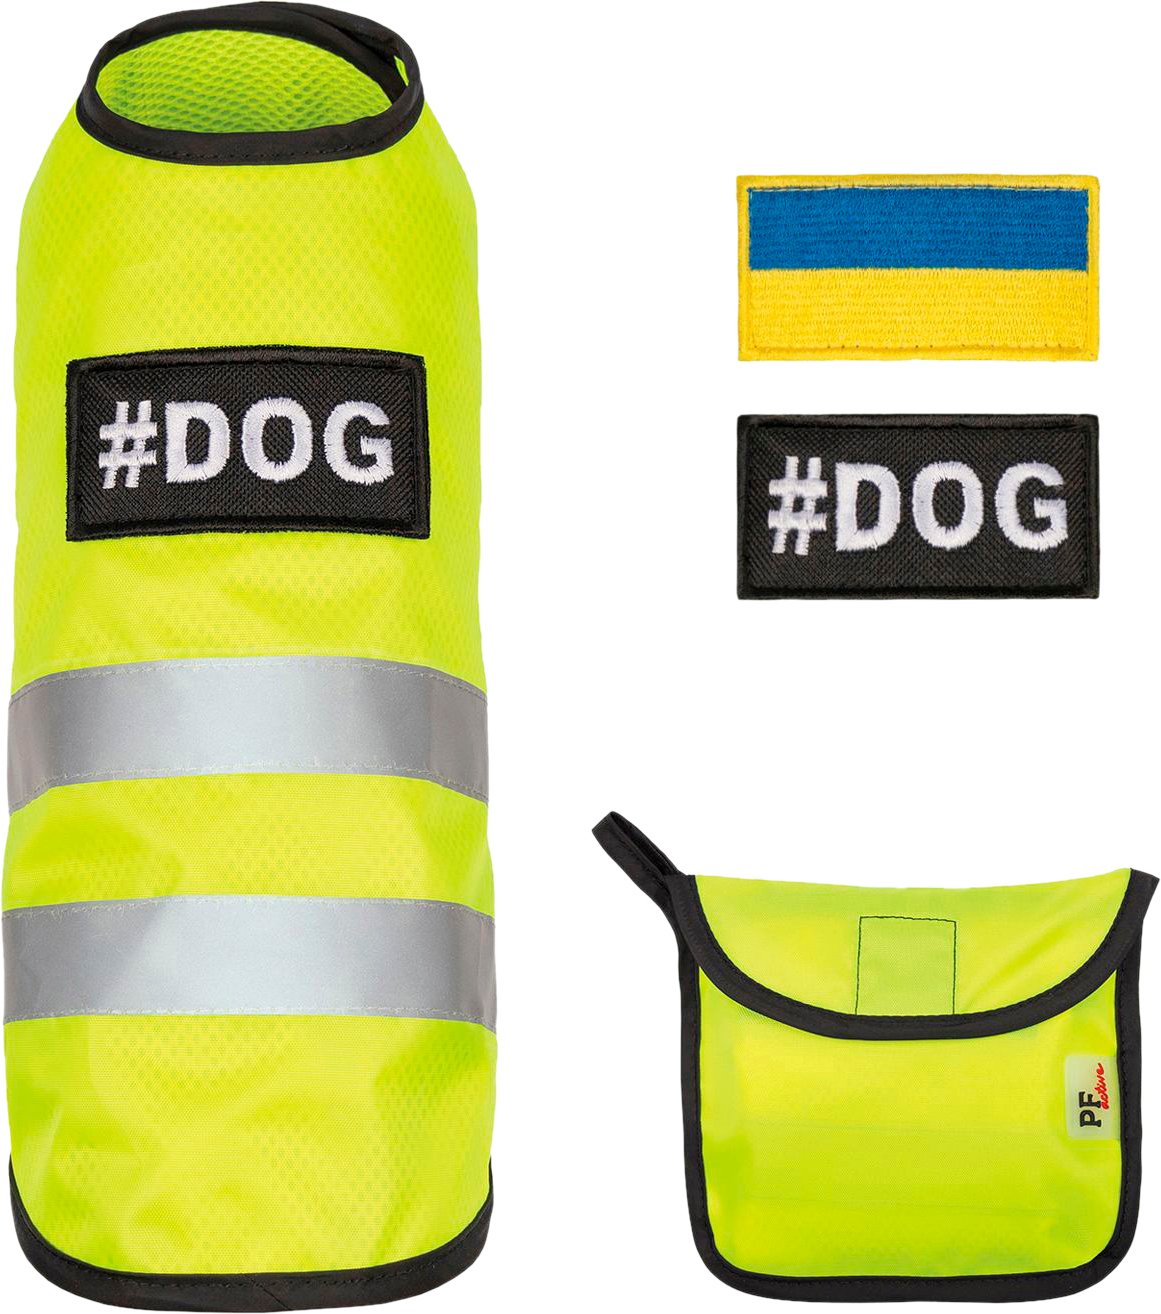 Жилет для собак Pet Fashion Warm Yellow Vest розмір XS жовтийфото3